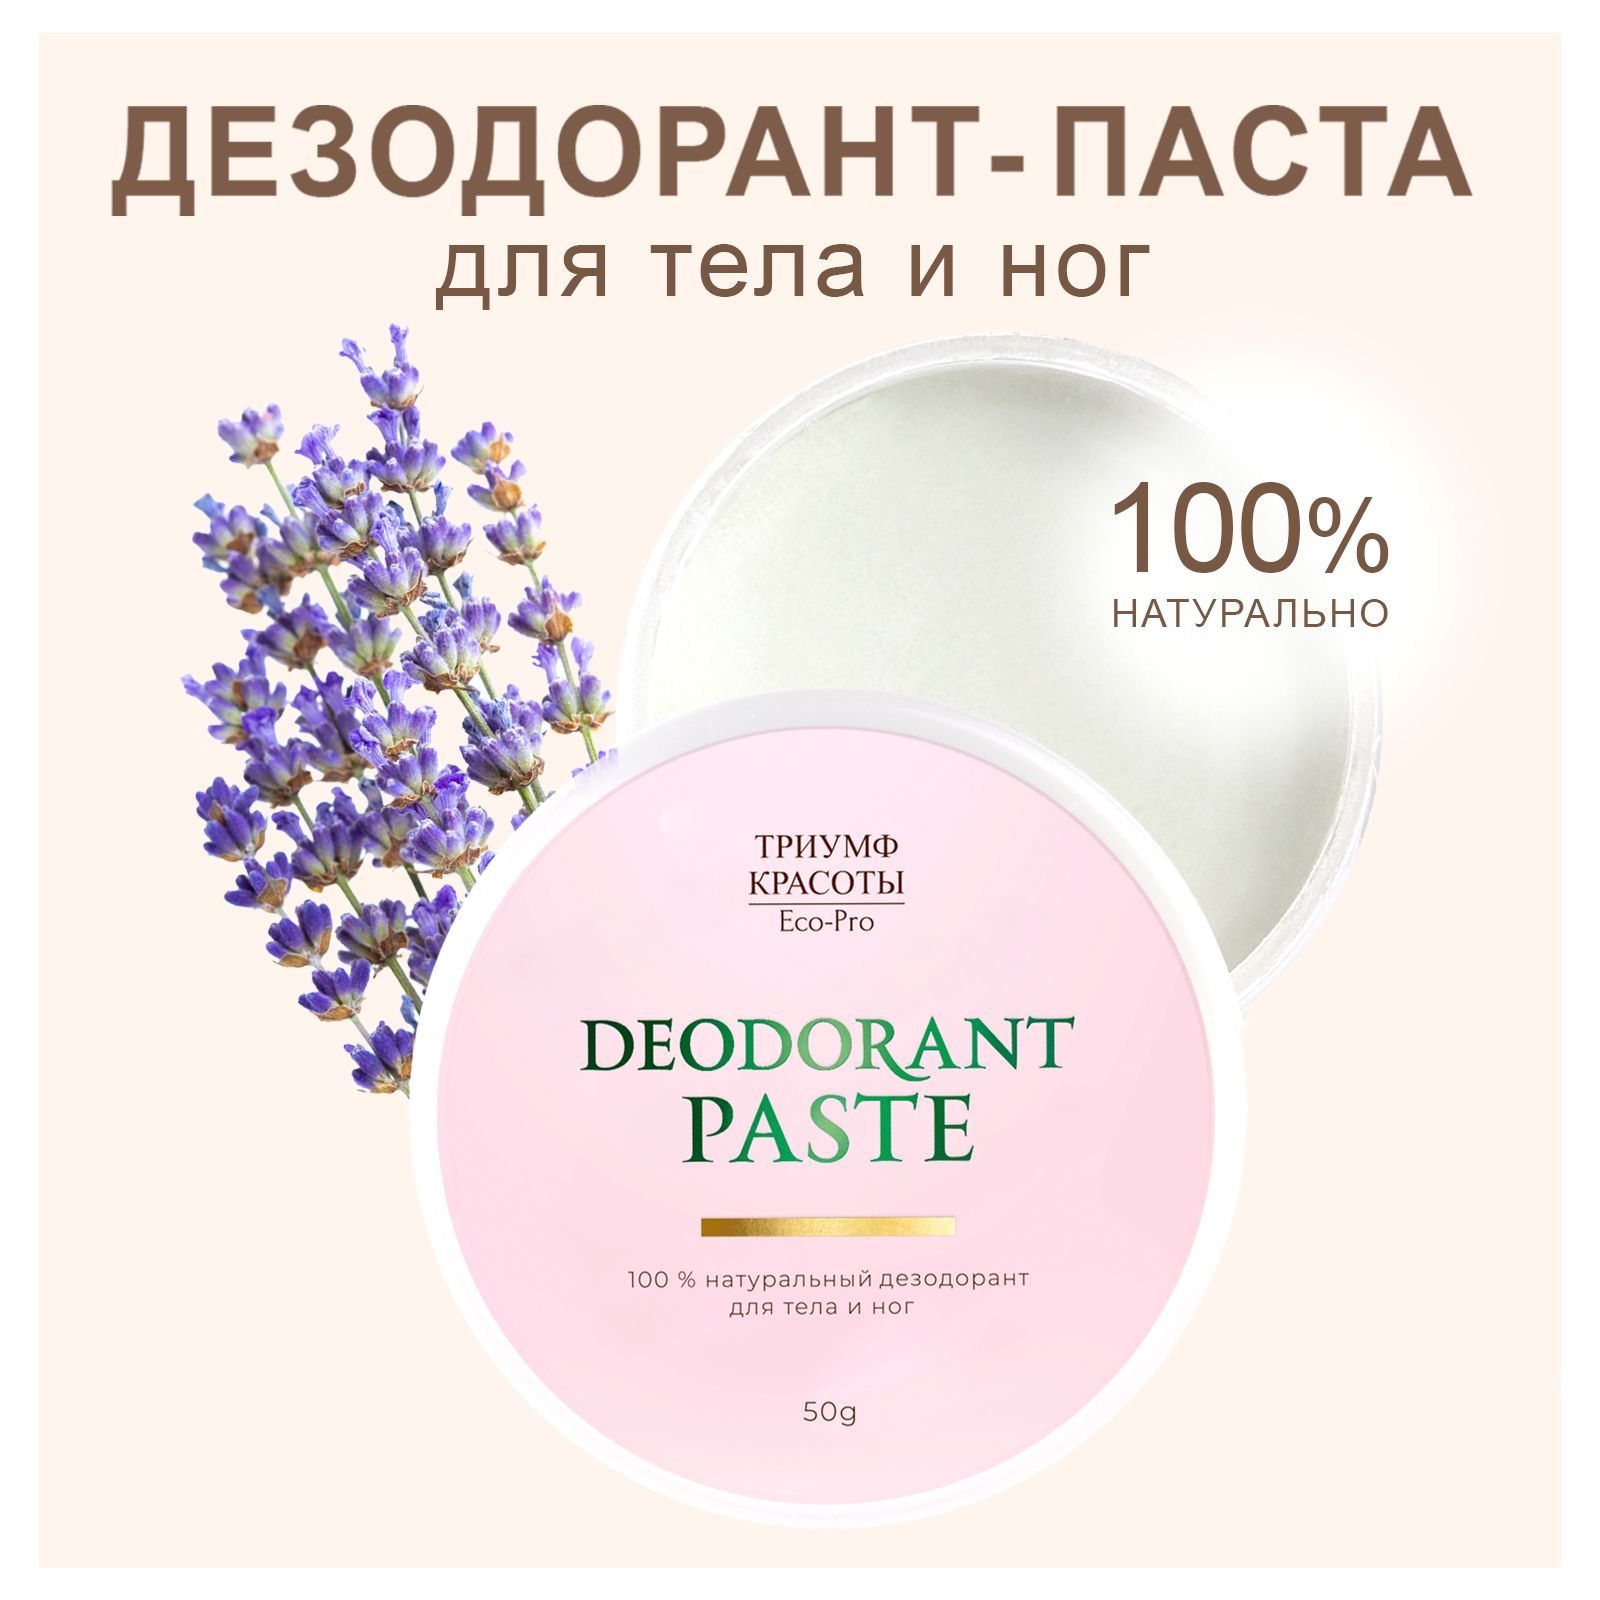 Натуральный содовый дезодорант для тела Триумф Красоты Лаванда, 50 г